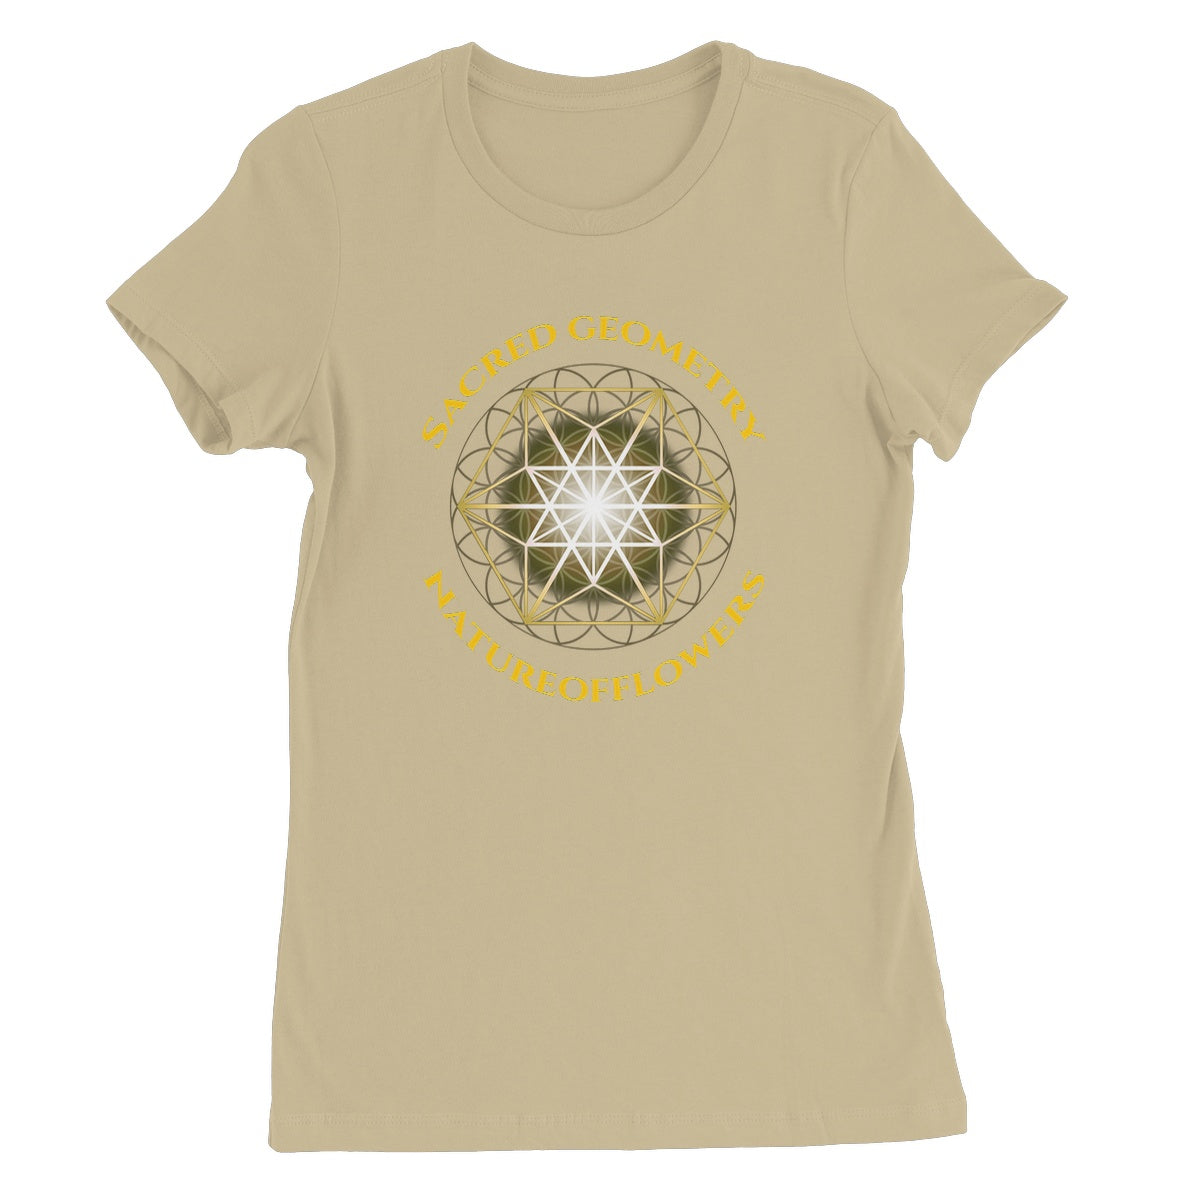 Sacred Geometry Natureofflowers Women's Favourite T-Shirt